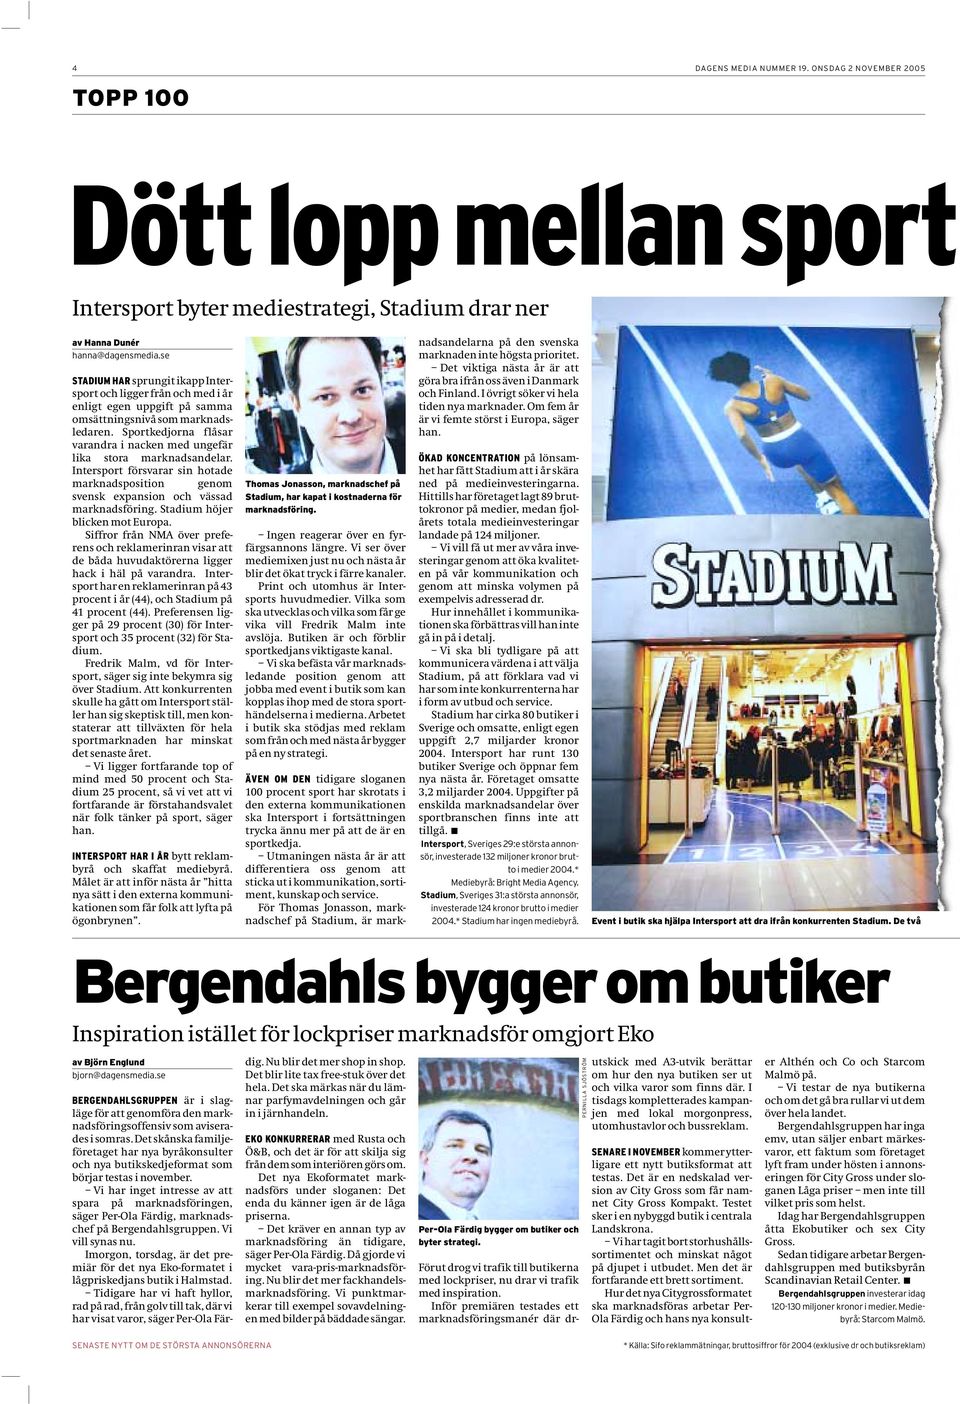 Sportkedjorna flåsar varandra i nacken med ungefär lika stora marknadsandelar. Intersport försvarar sin hotade marknadsposition genom svensk expansion och vässad marknadsföring.